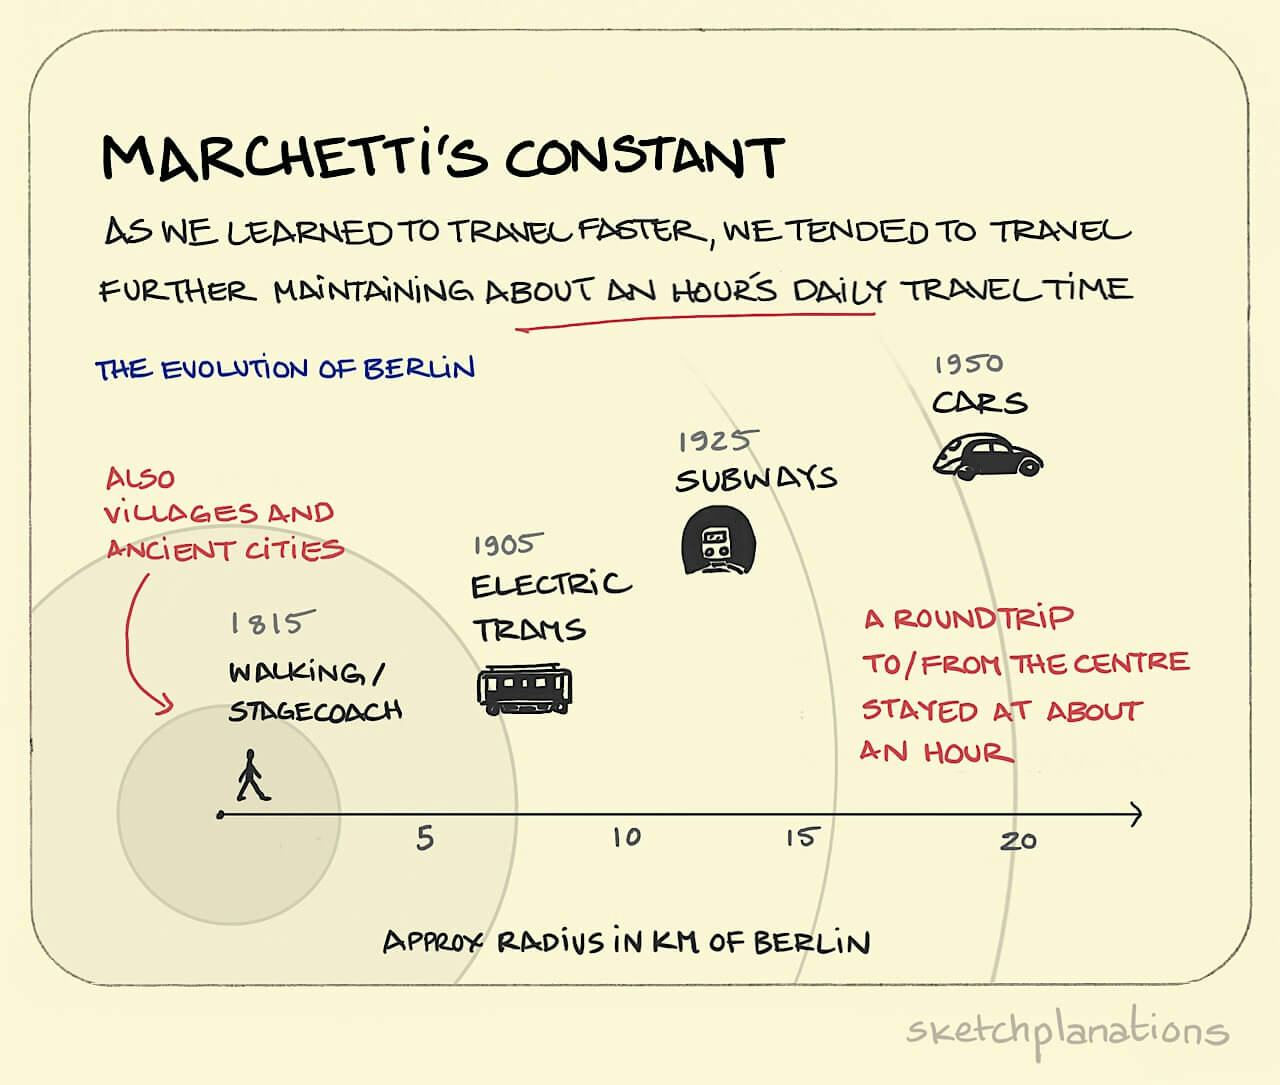 Marchetti’s constant - Sketchplanations